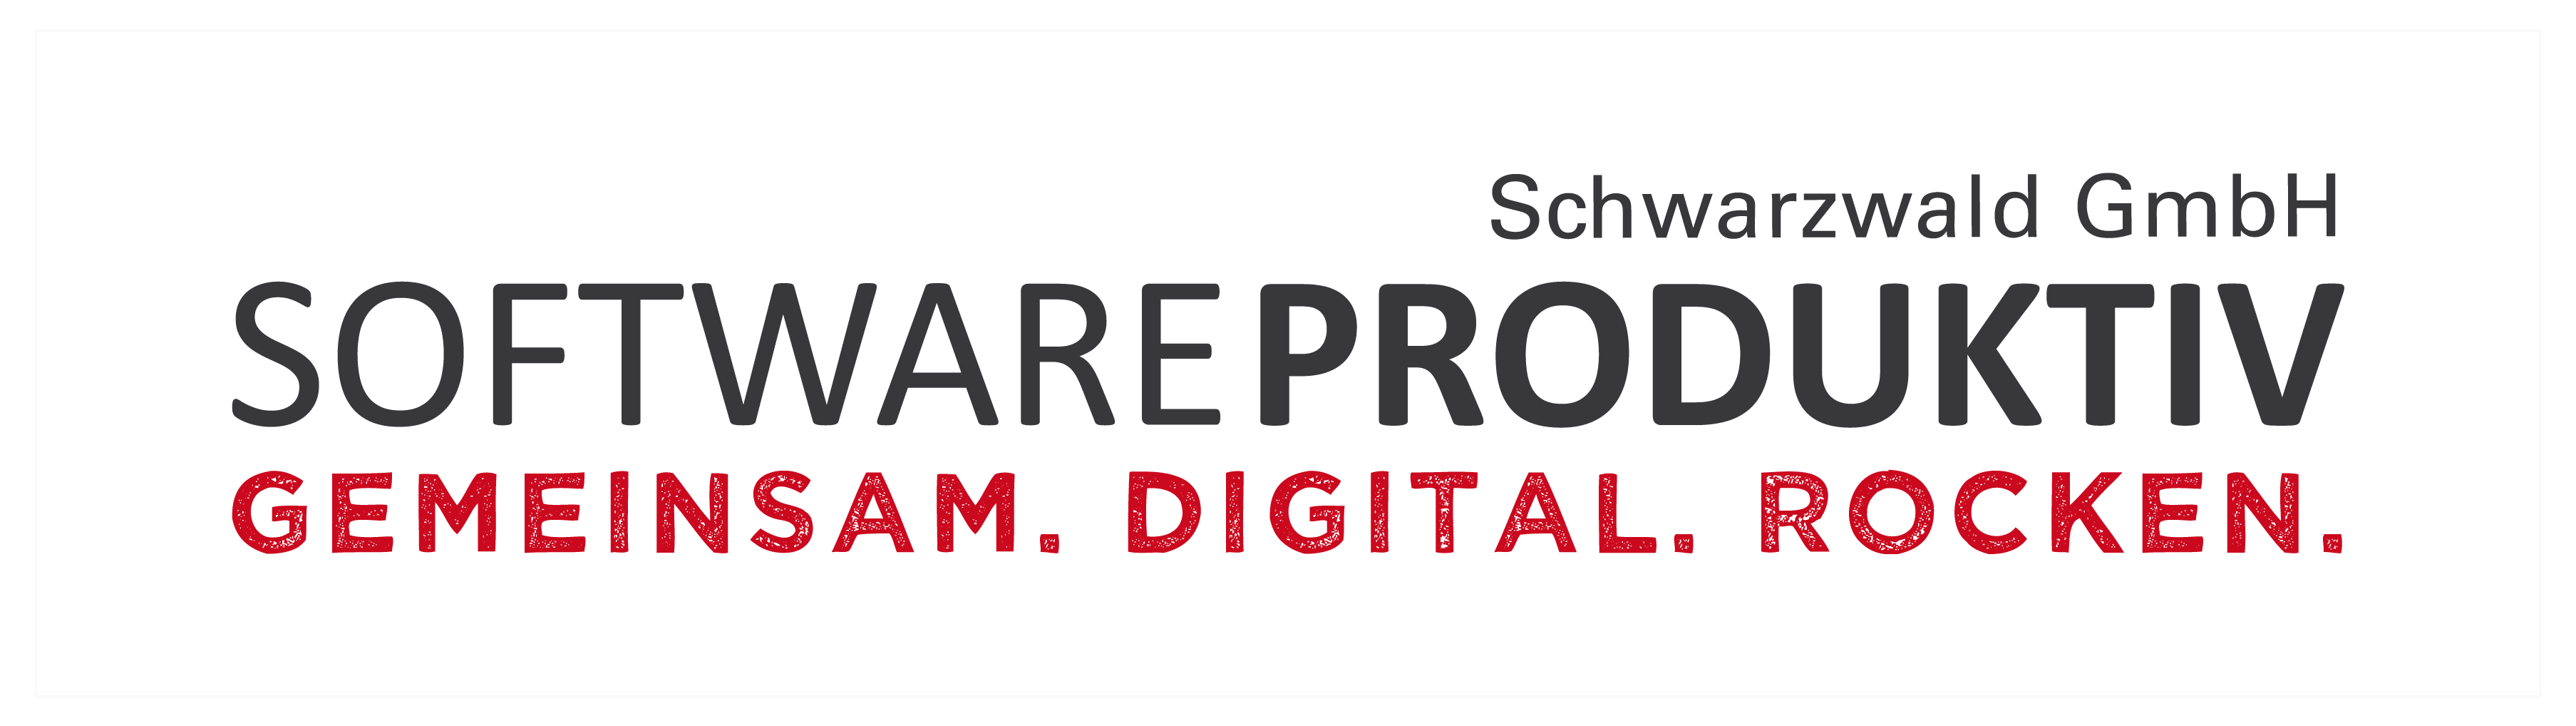 softwareproduktiv Schwarzwald GmbH<br>